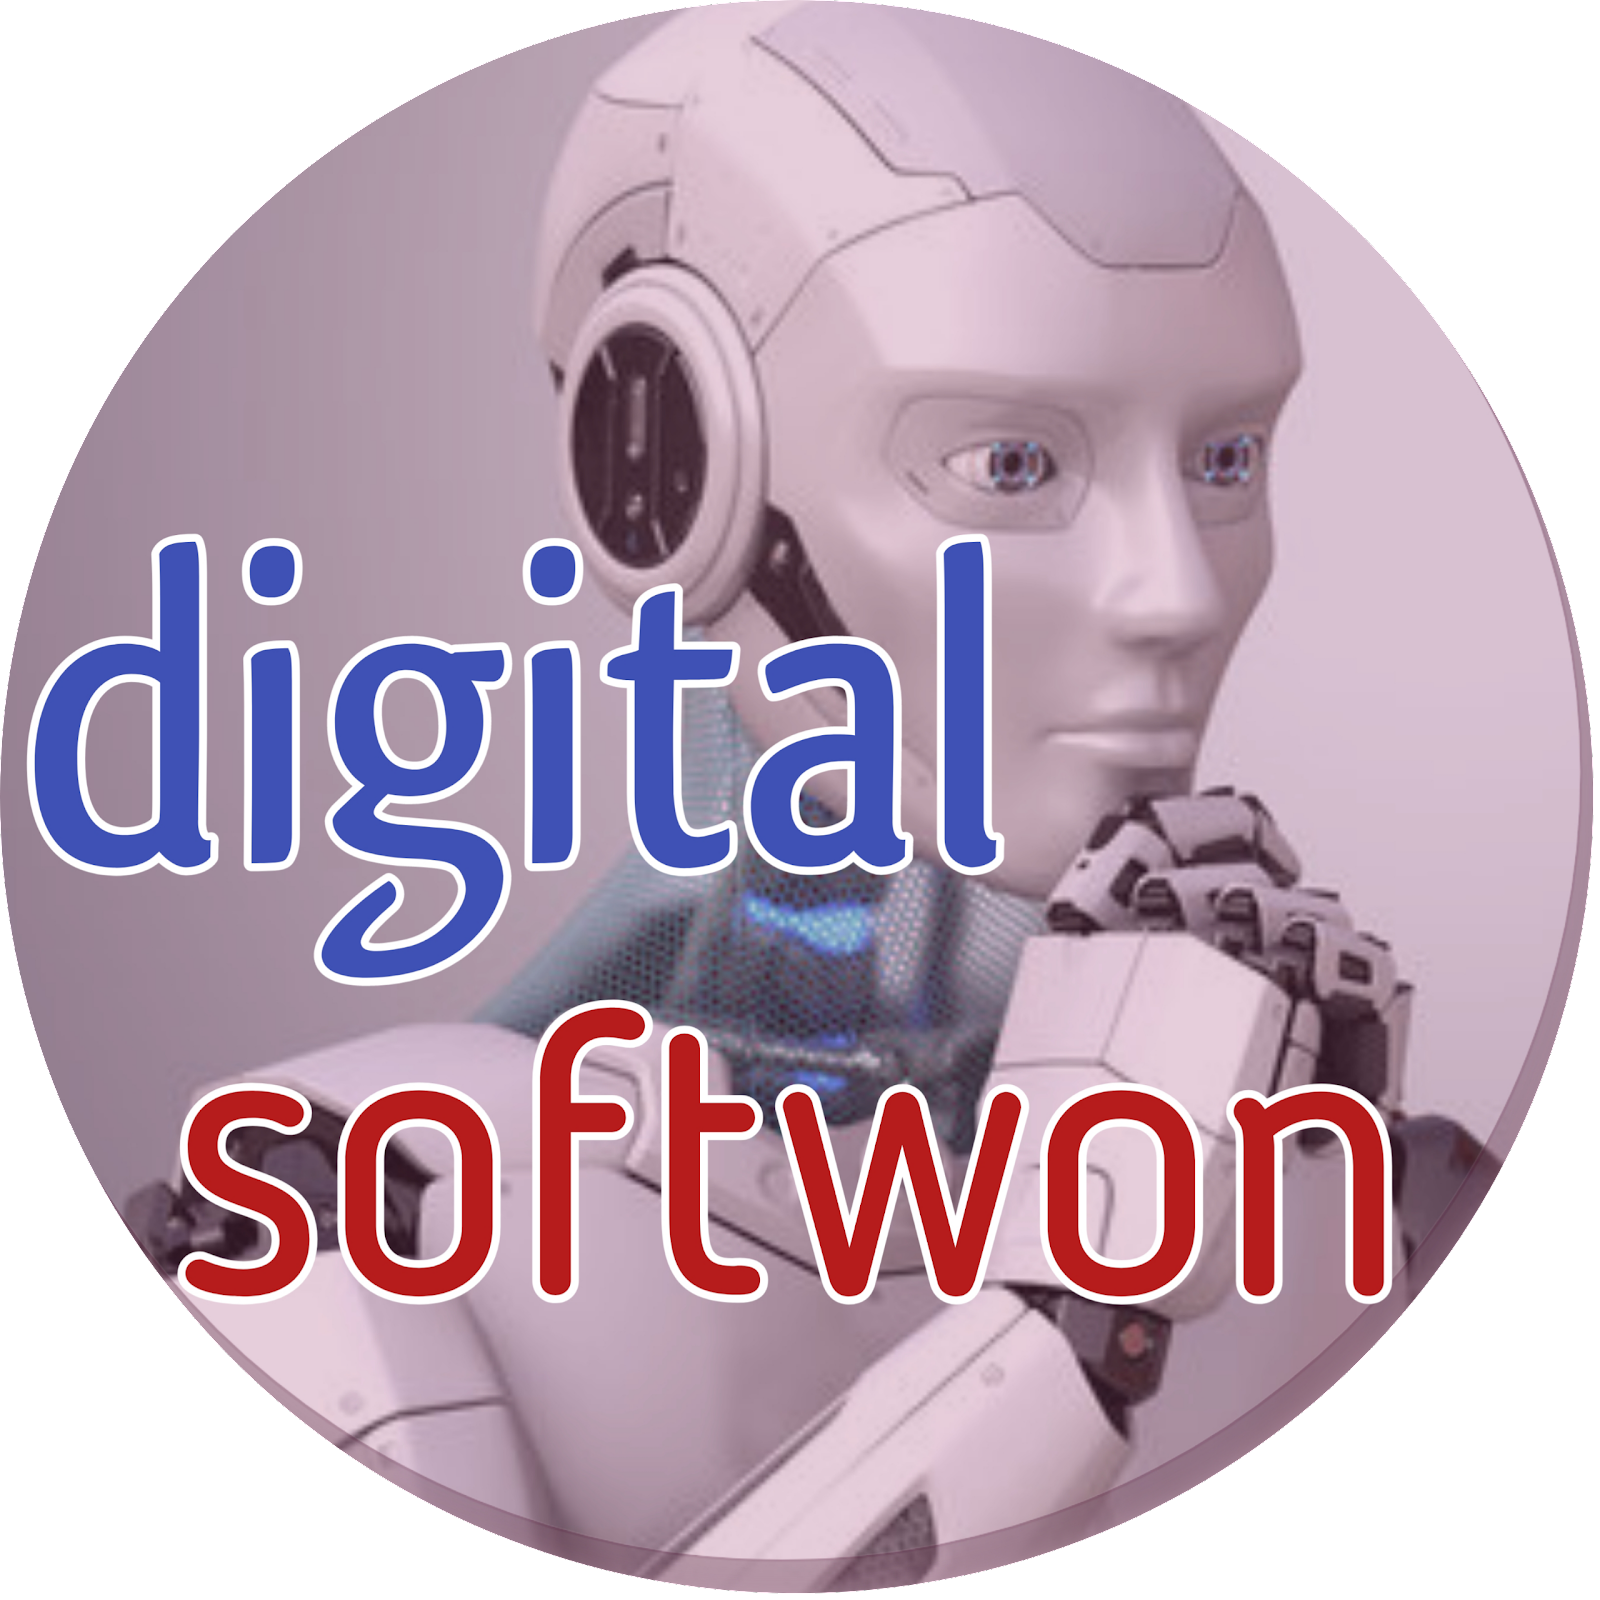 Digital softwon 